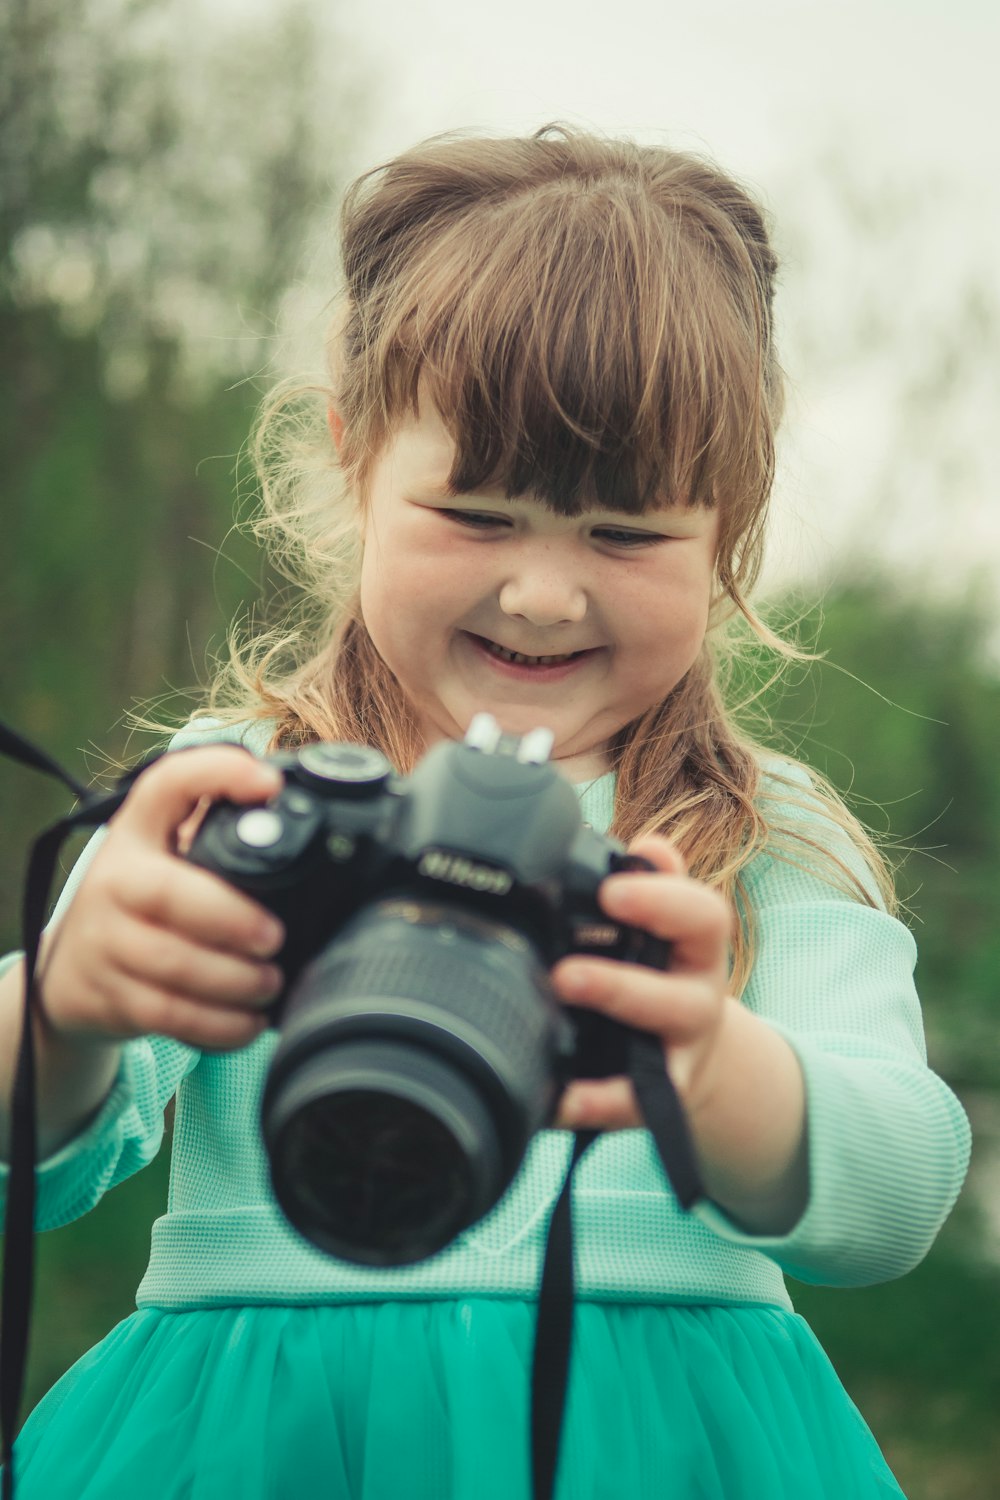 ニコンデジタル一眼レフカメラを保持している緑のドレスで笑顔の女の子